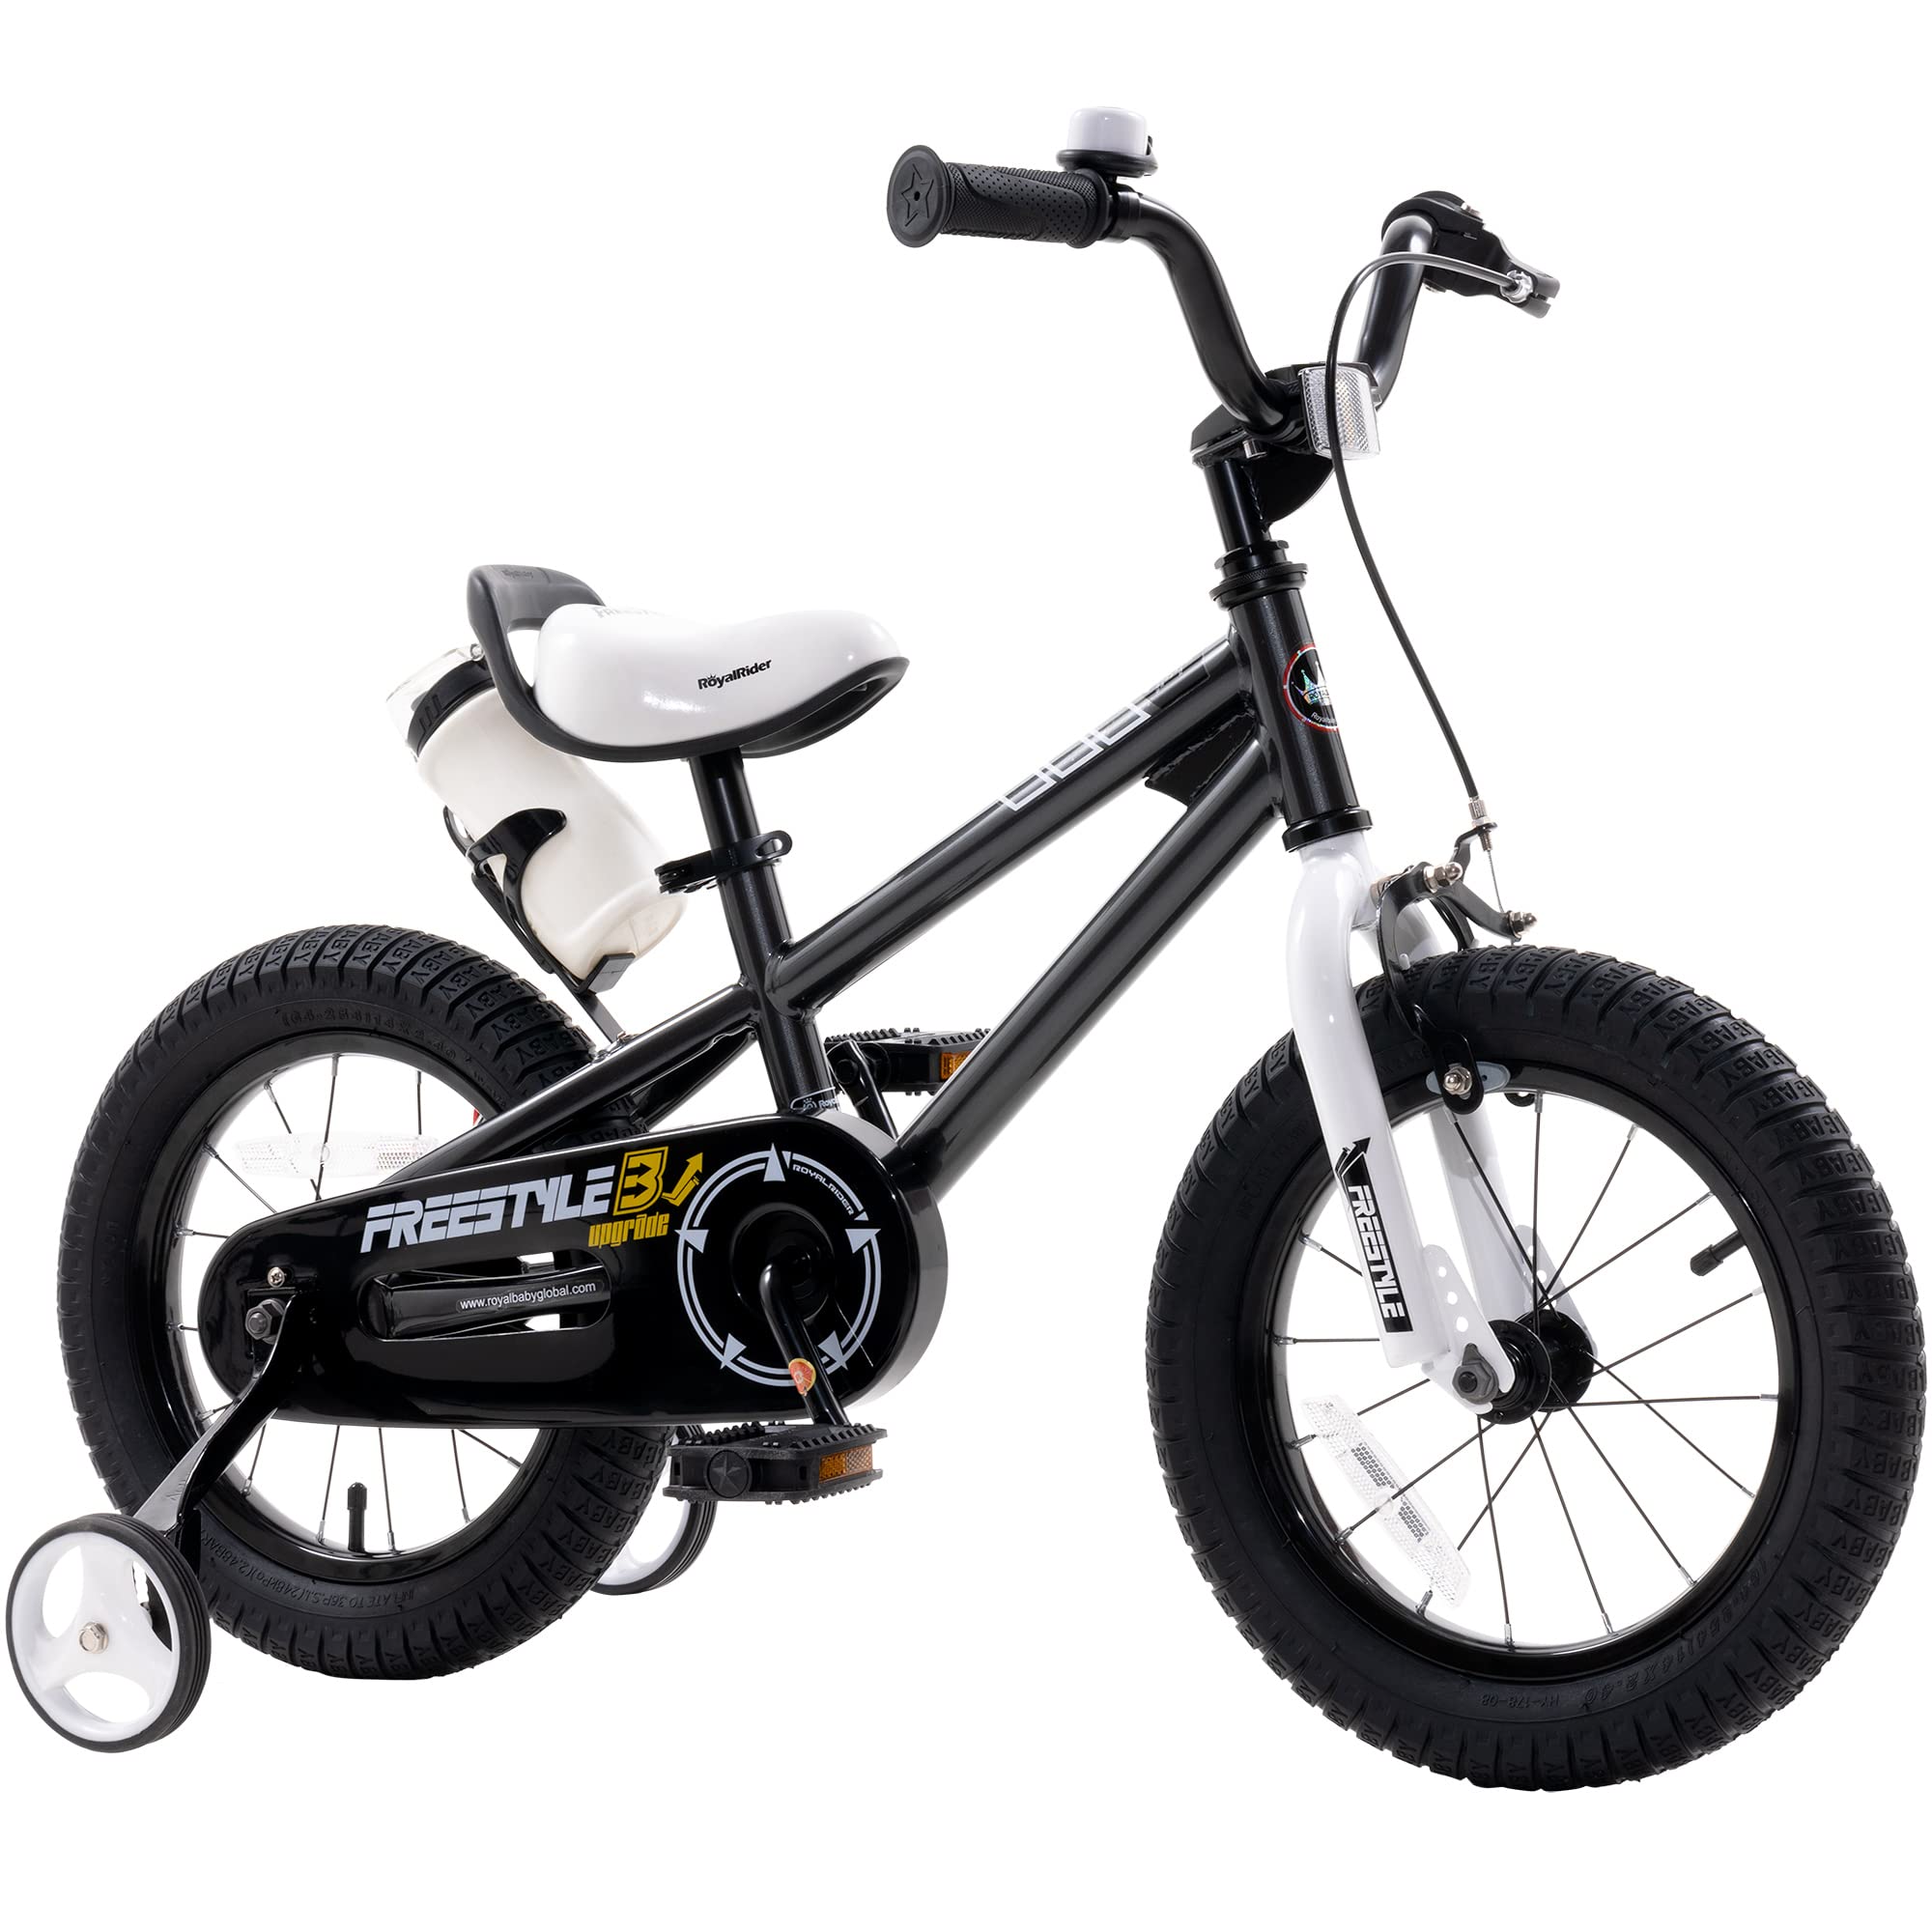 Royalbaby フリースタイル キッズバイク 男の子 女の子 16 インチ BMX 子供用自転車 補助輪とキックスタンド付き 対象年齢 4-7 歳 ブラック